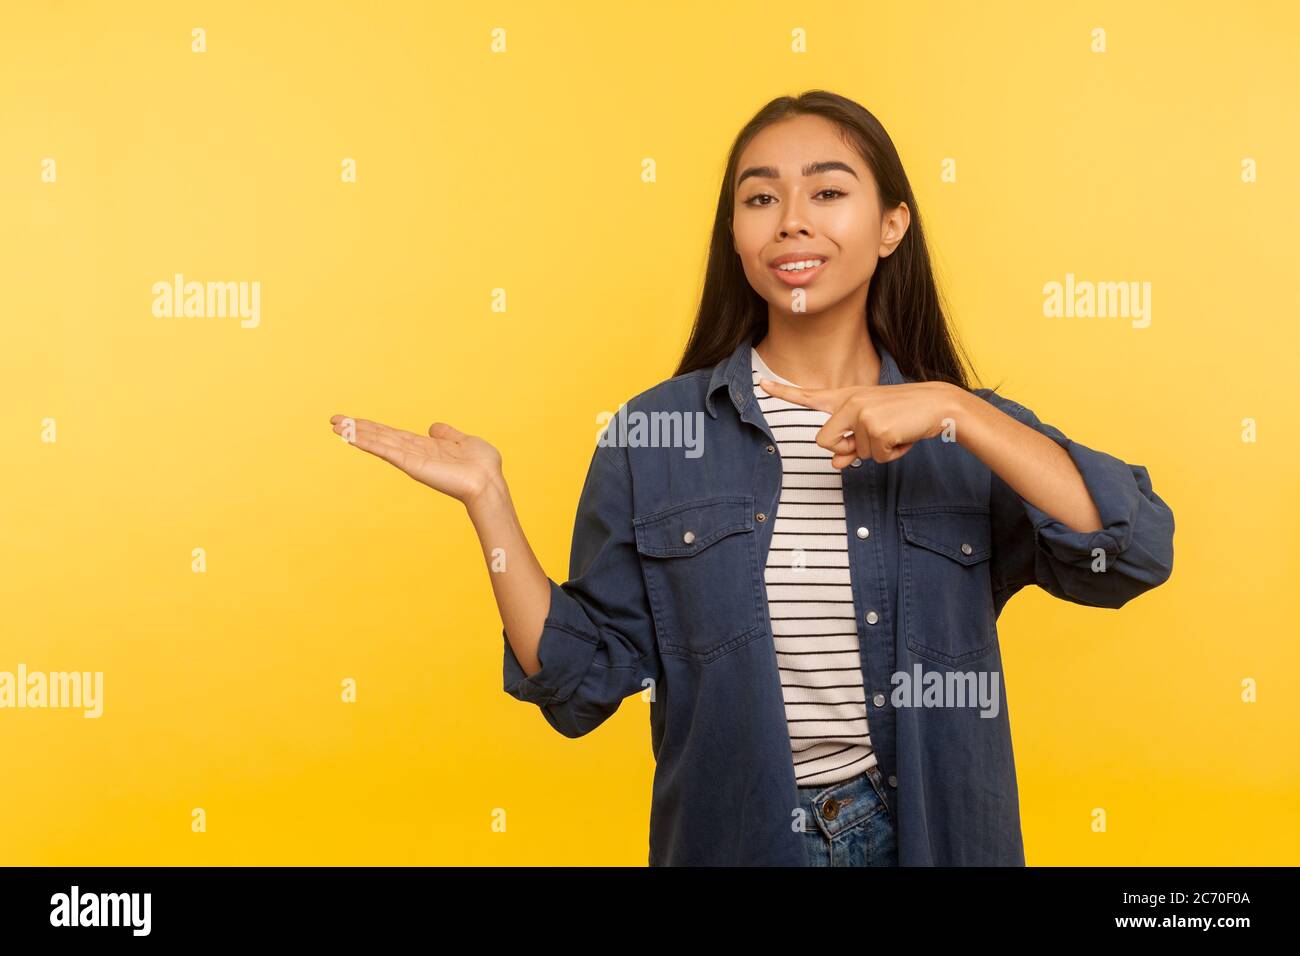 Attenzione, pubblicità piacevole del prodotto! Ritratto di ragazza felice in camicia di denim tenendo spazio di copia con il palmo, che punta a vuoto luogo per immagine commerciale. i Foto Stock